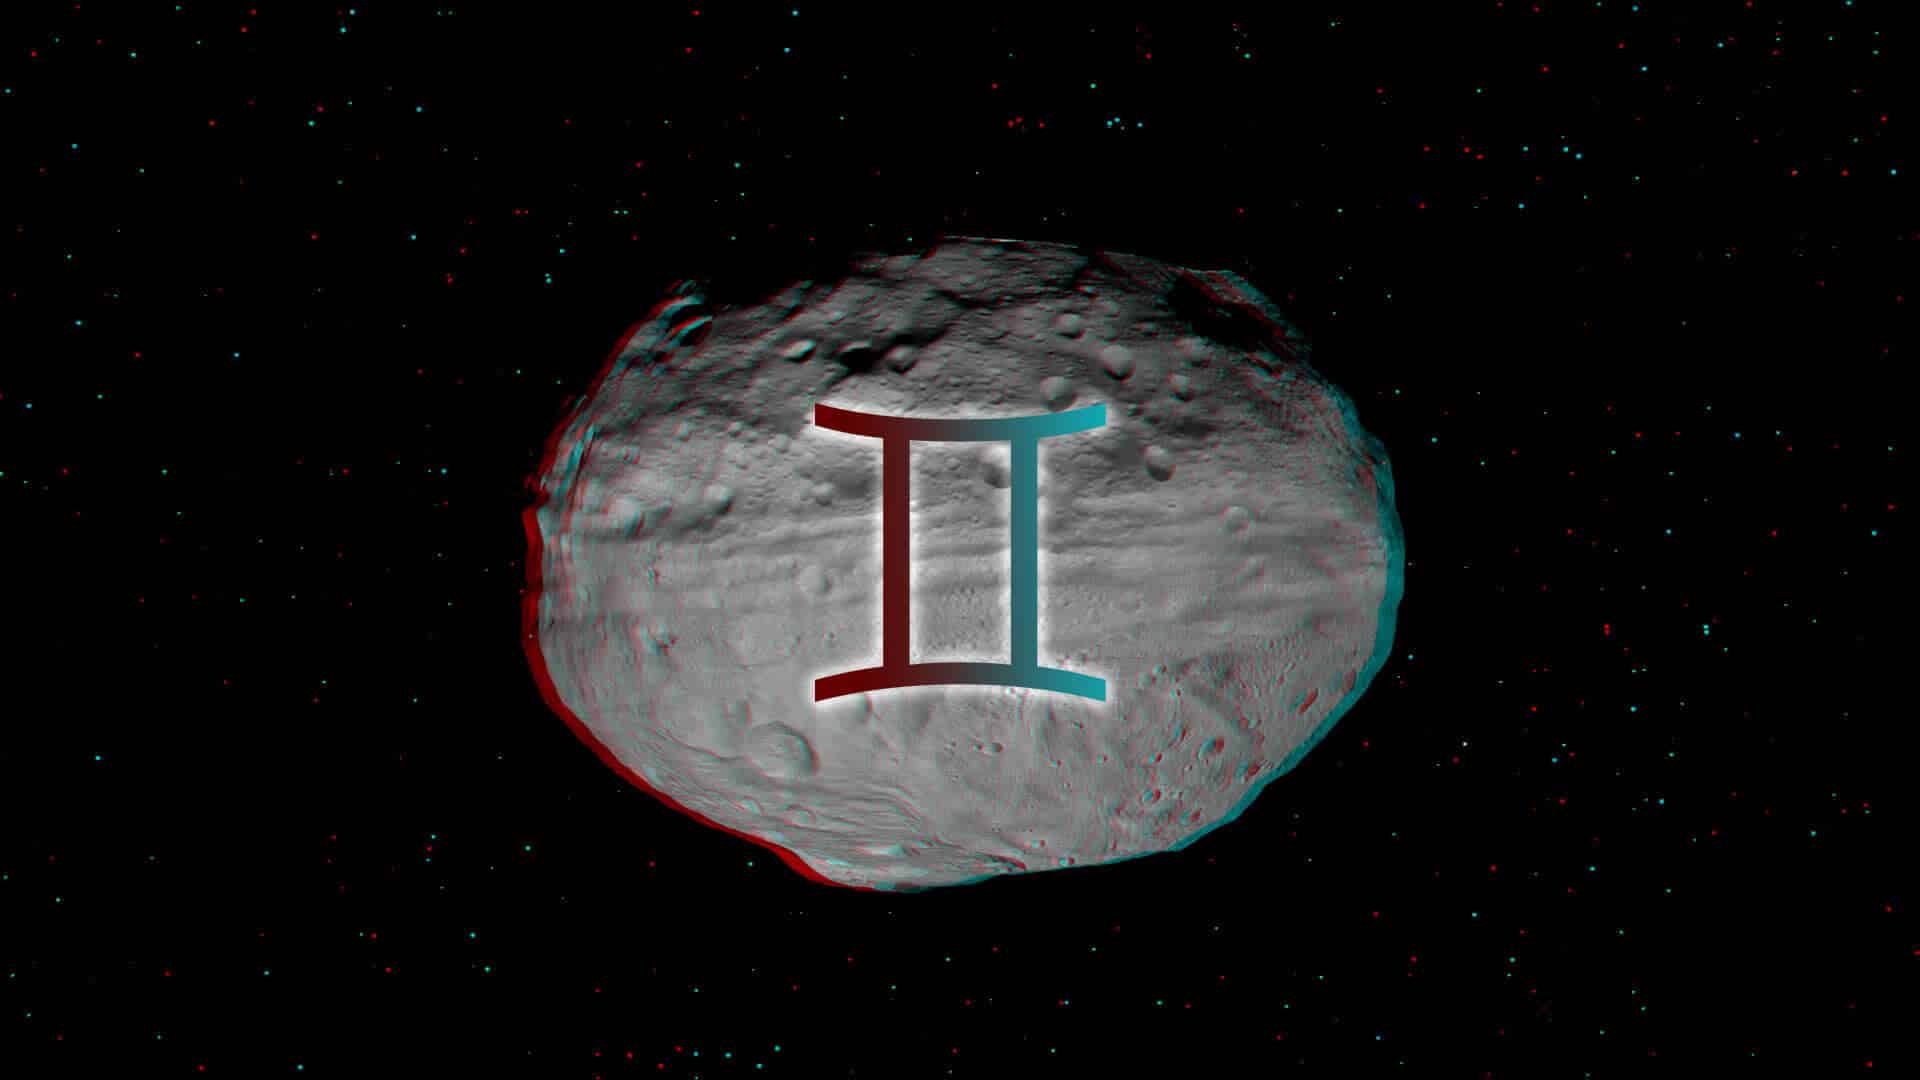 Vesta in Gemini March 21 – June 3